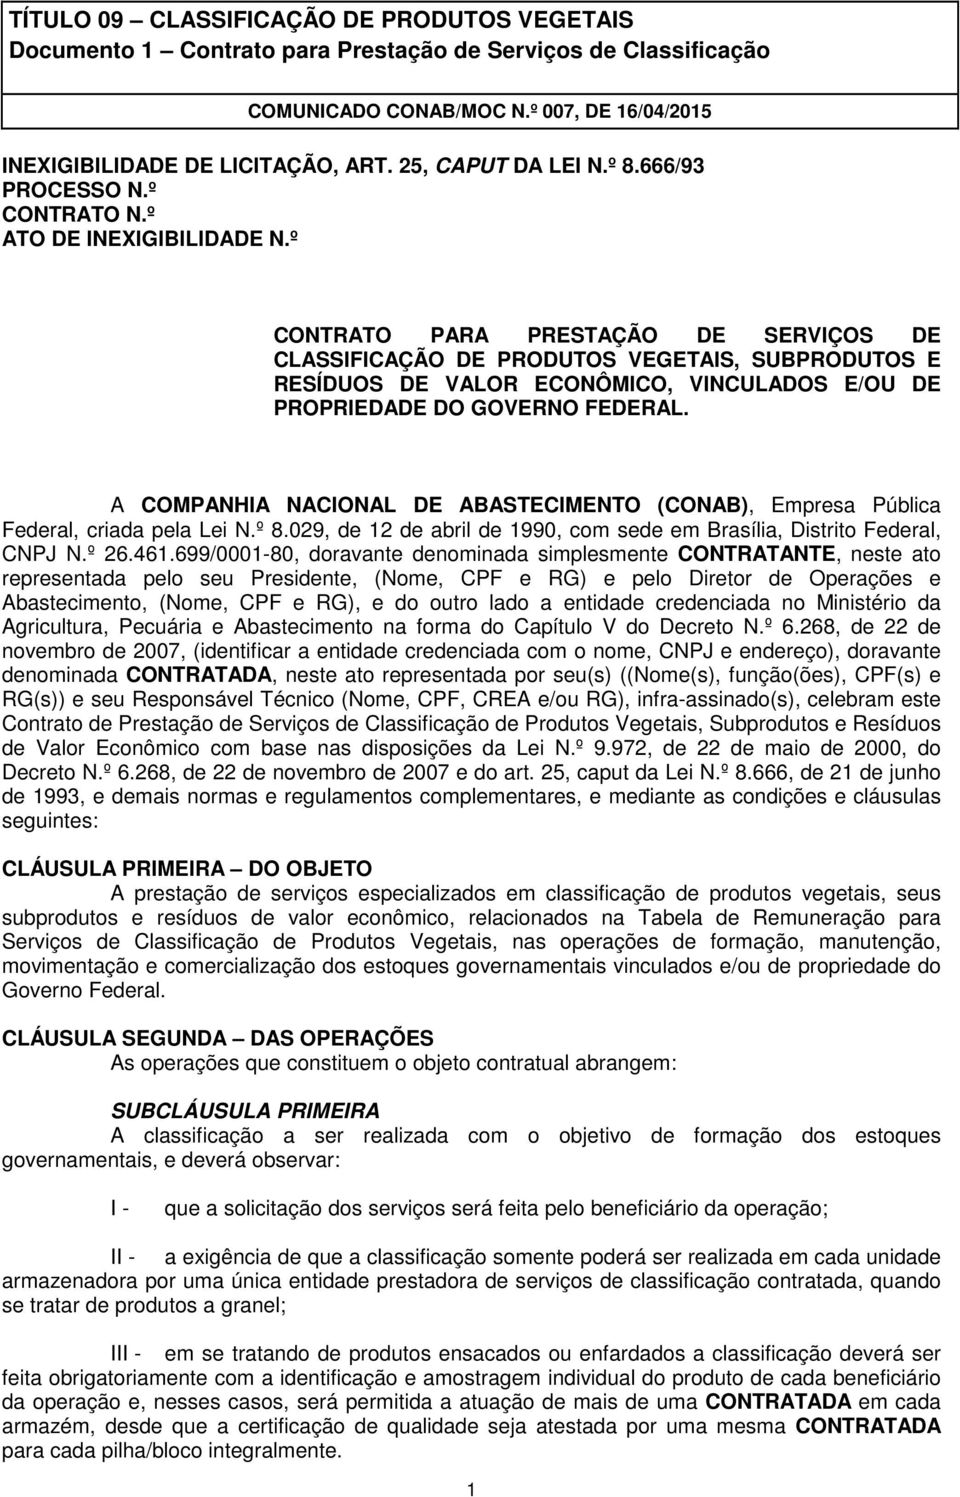 A COMPANHIA NACIONAL DE ABASTECIMENTO (CONAB), Empresa Pública Federal, criada pela Lei N.º 8.029, de 12 de abril de 1990, com sede em Brasília, Distrito Federal, CNPJ N.º 26.461.